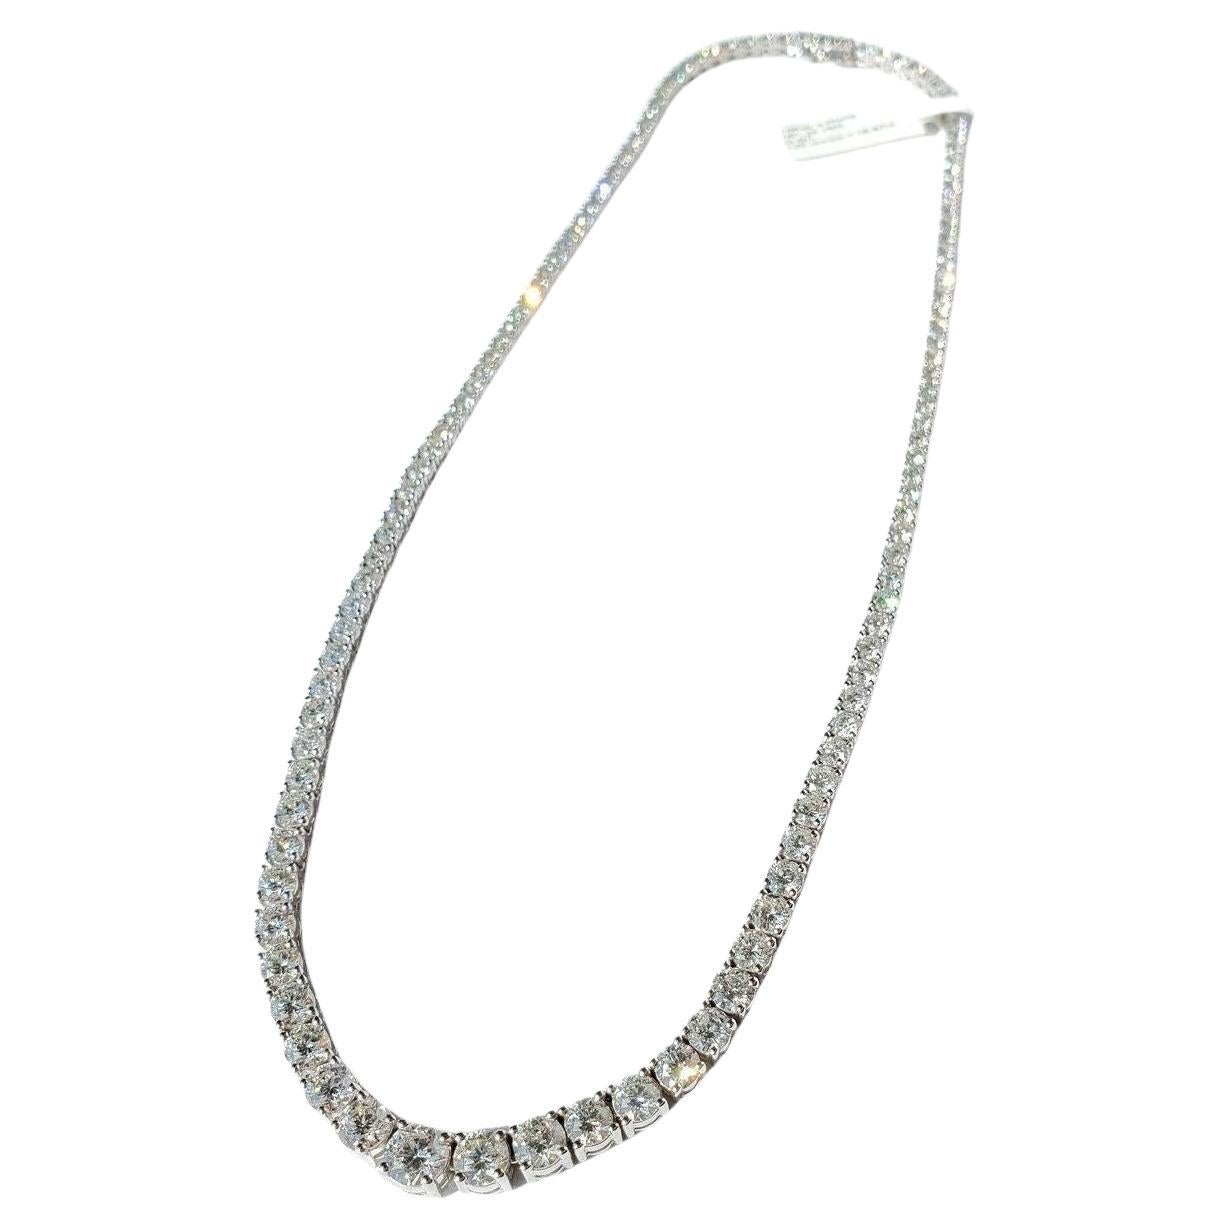 Eine exquisite Riviera-Halskette
ovale Diamanten 
g Farbe
vs2 si1 Auge sauber